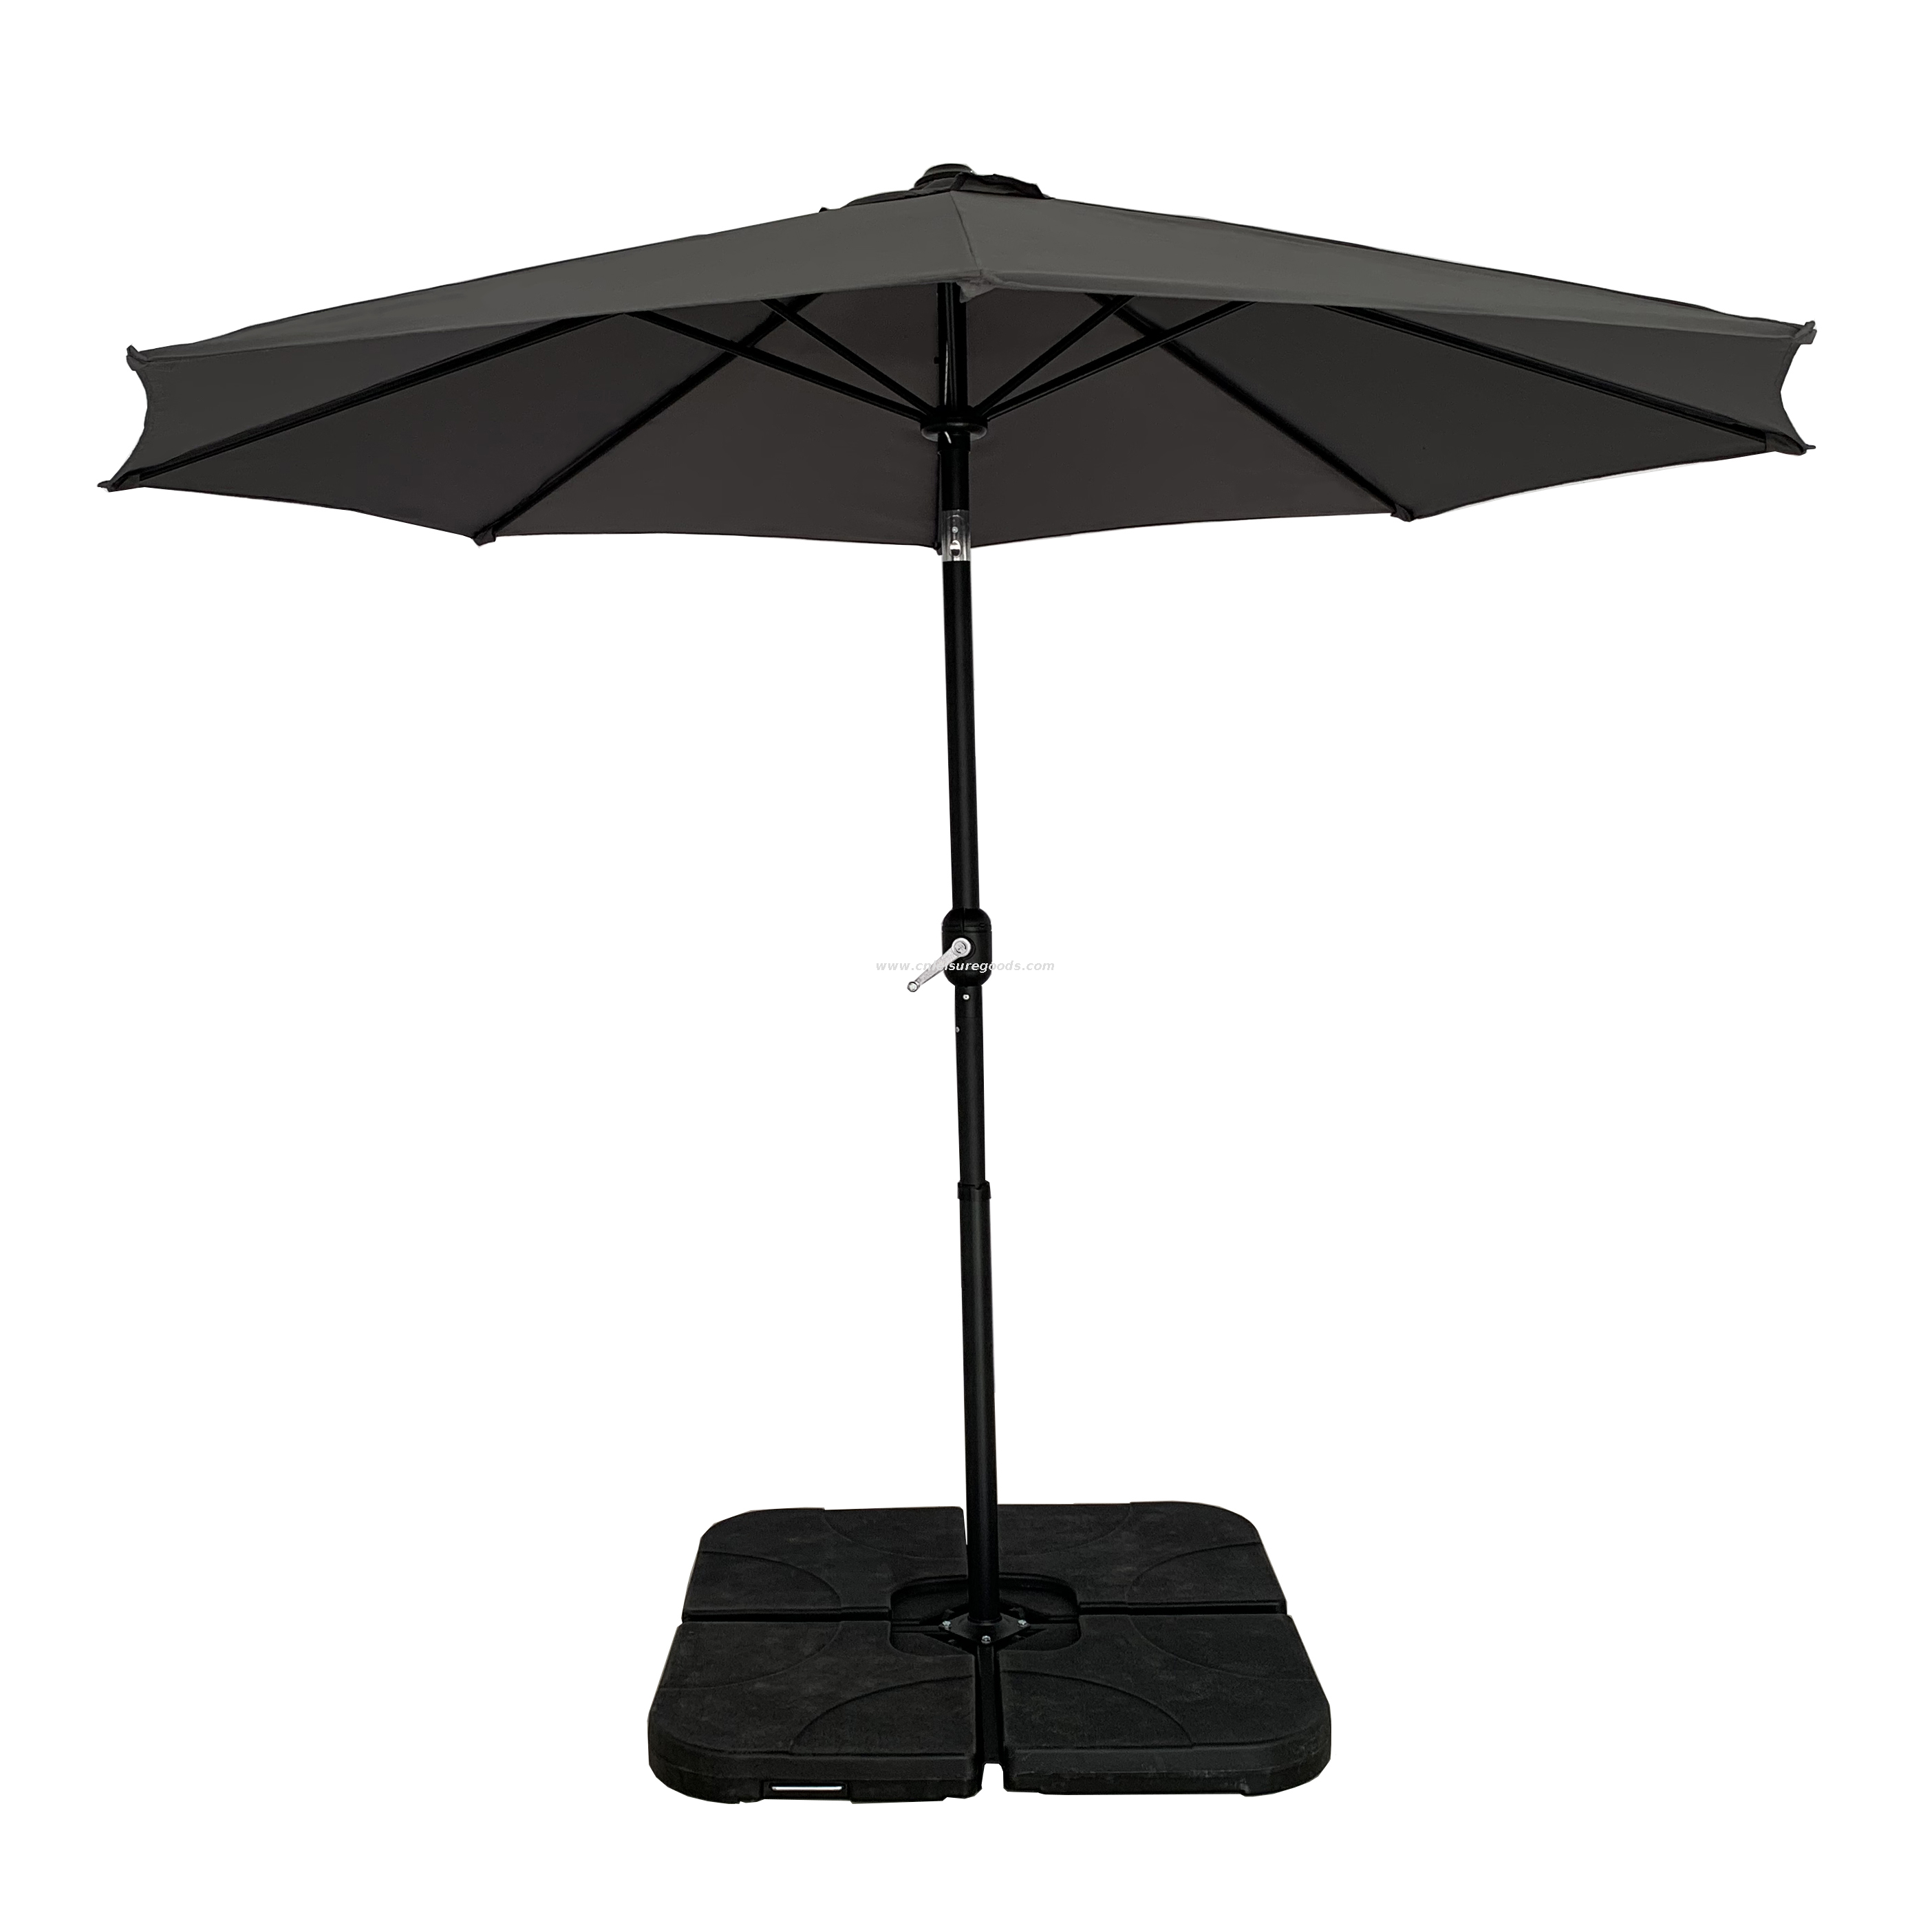 Uplion 10 Ft Big Waterproof Garden Market Table Sun Umbrella Outdoor Balcony Patio Parasol